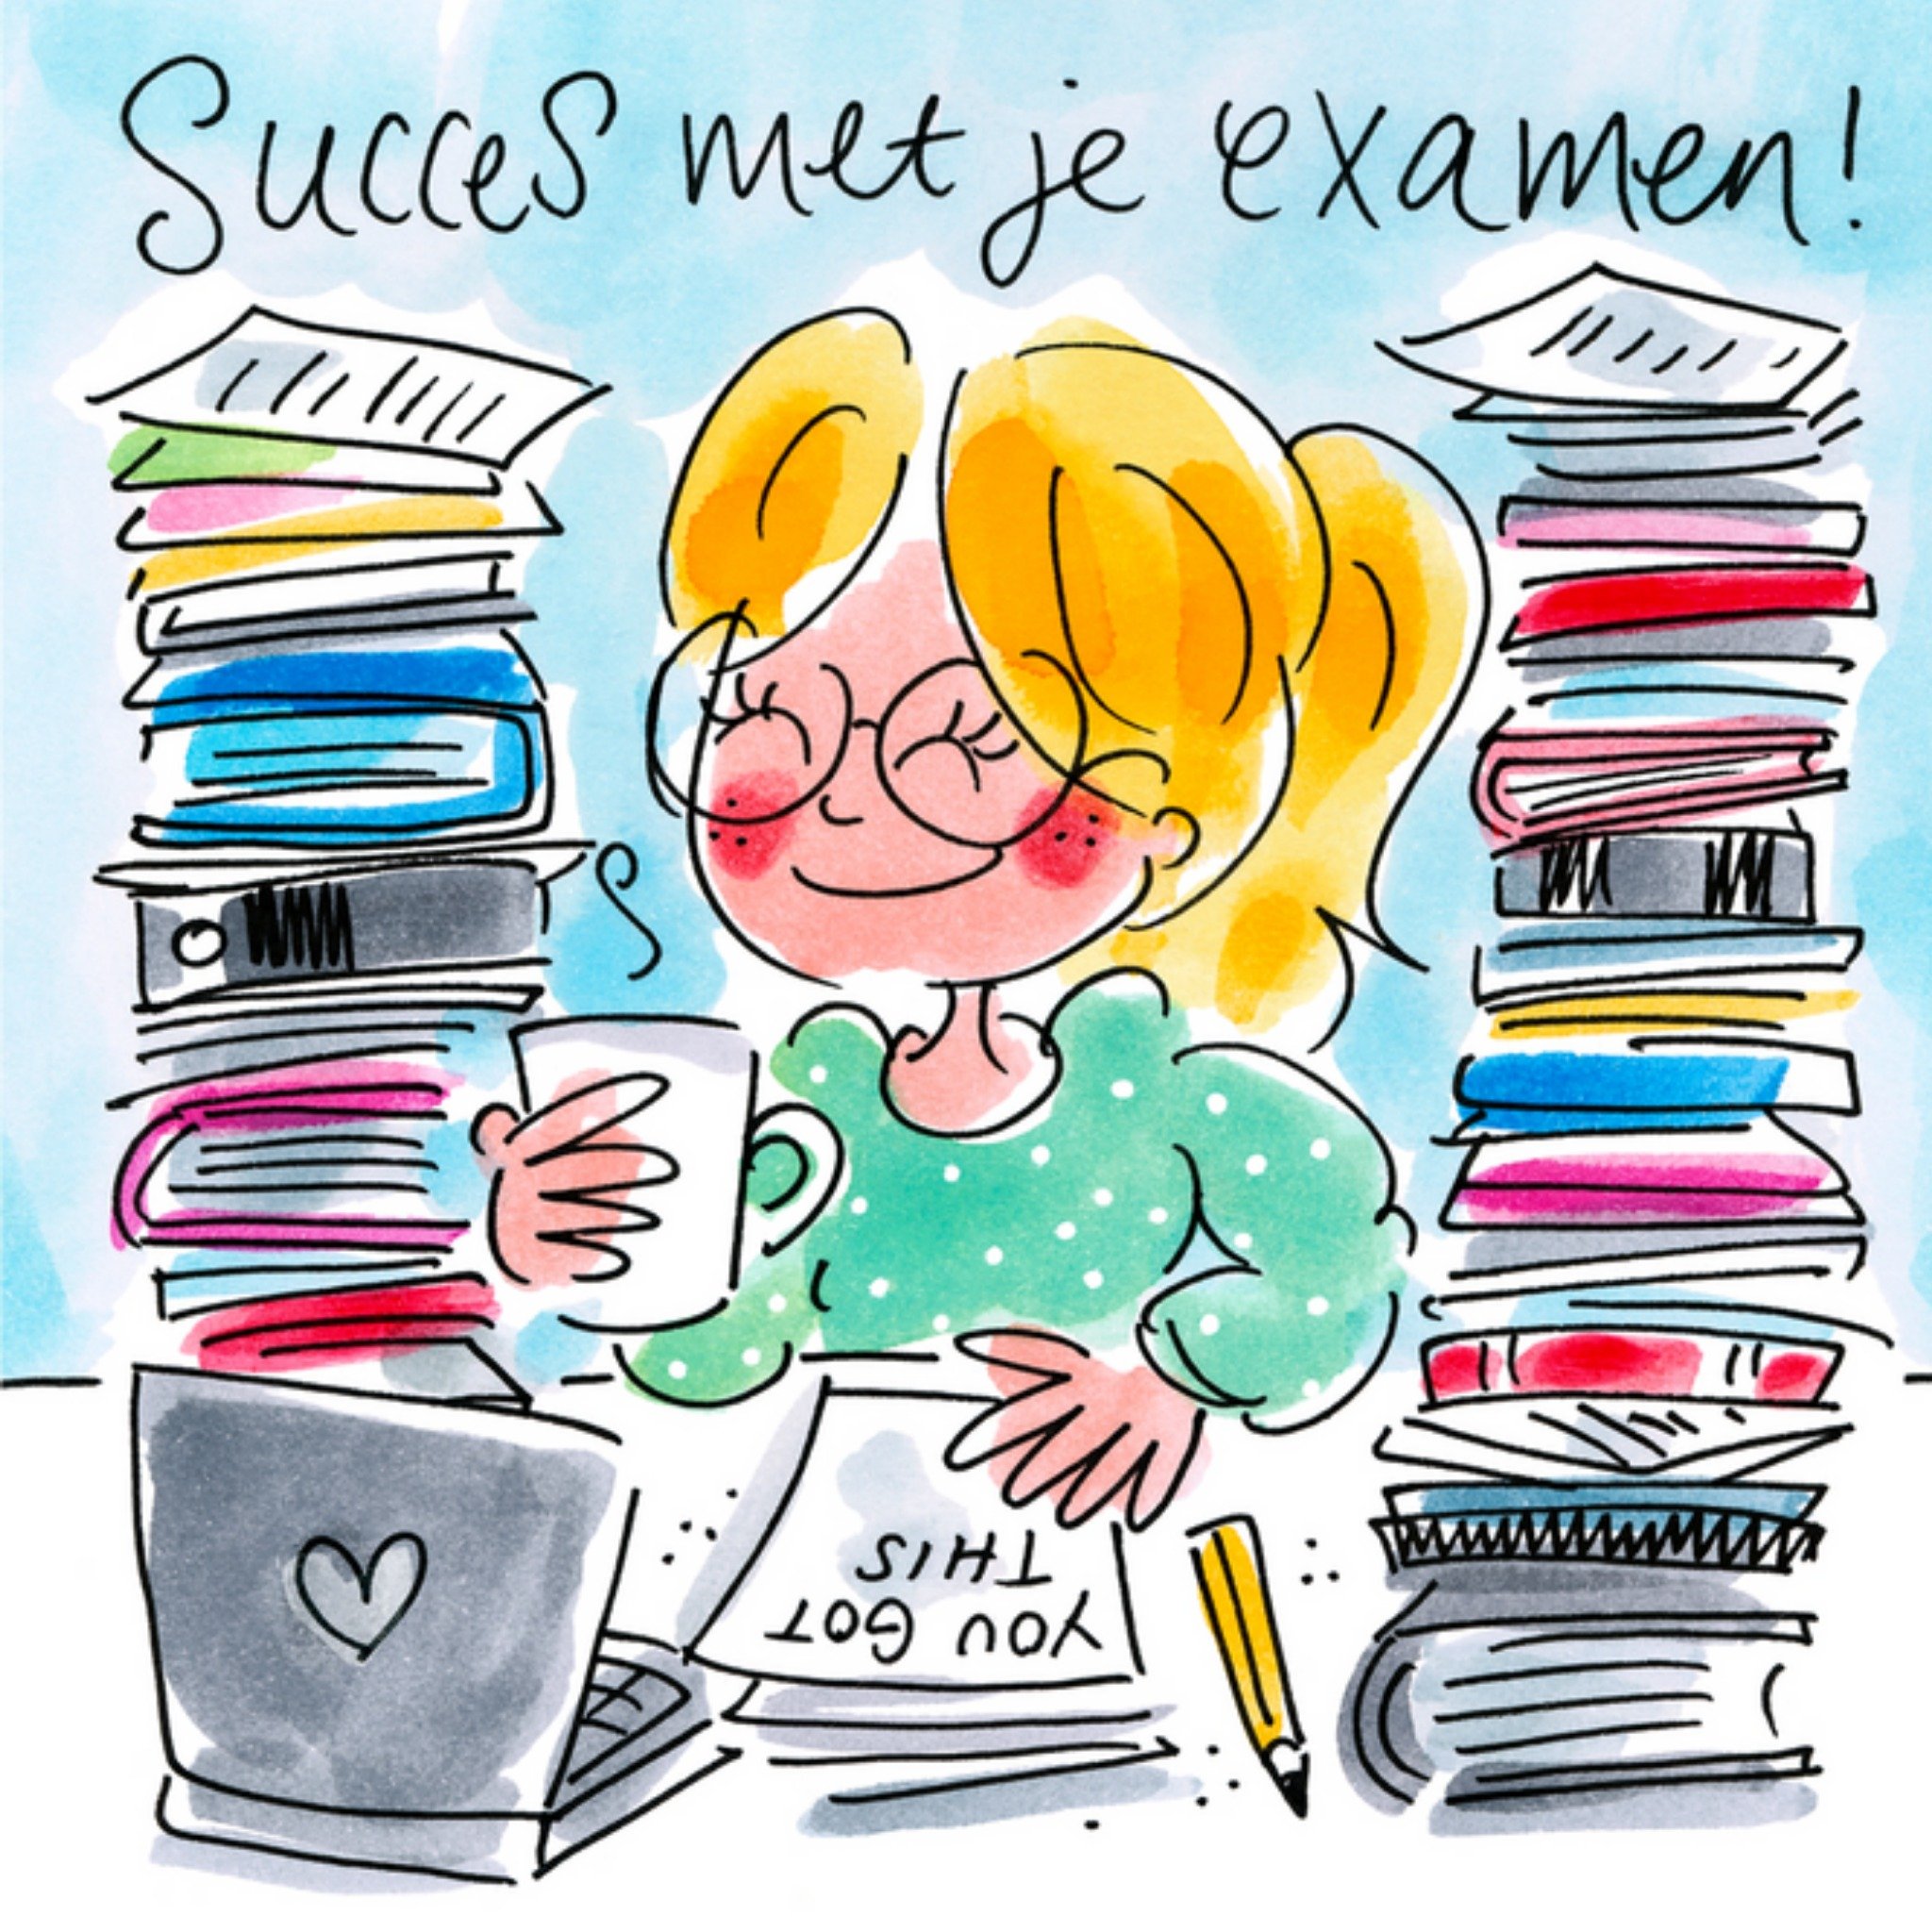 Blond Amsterdam - Succeskaart - Examen 05